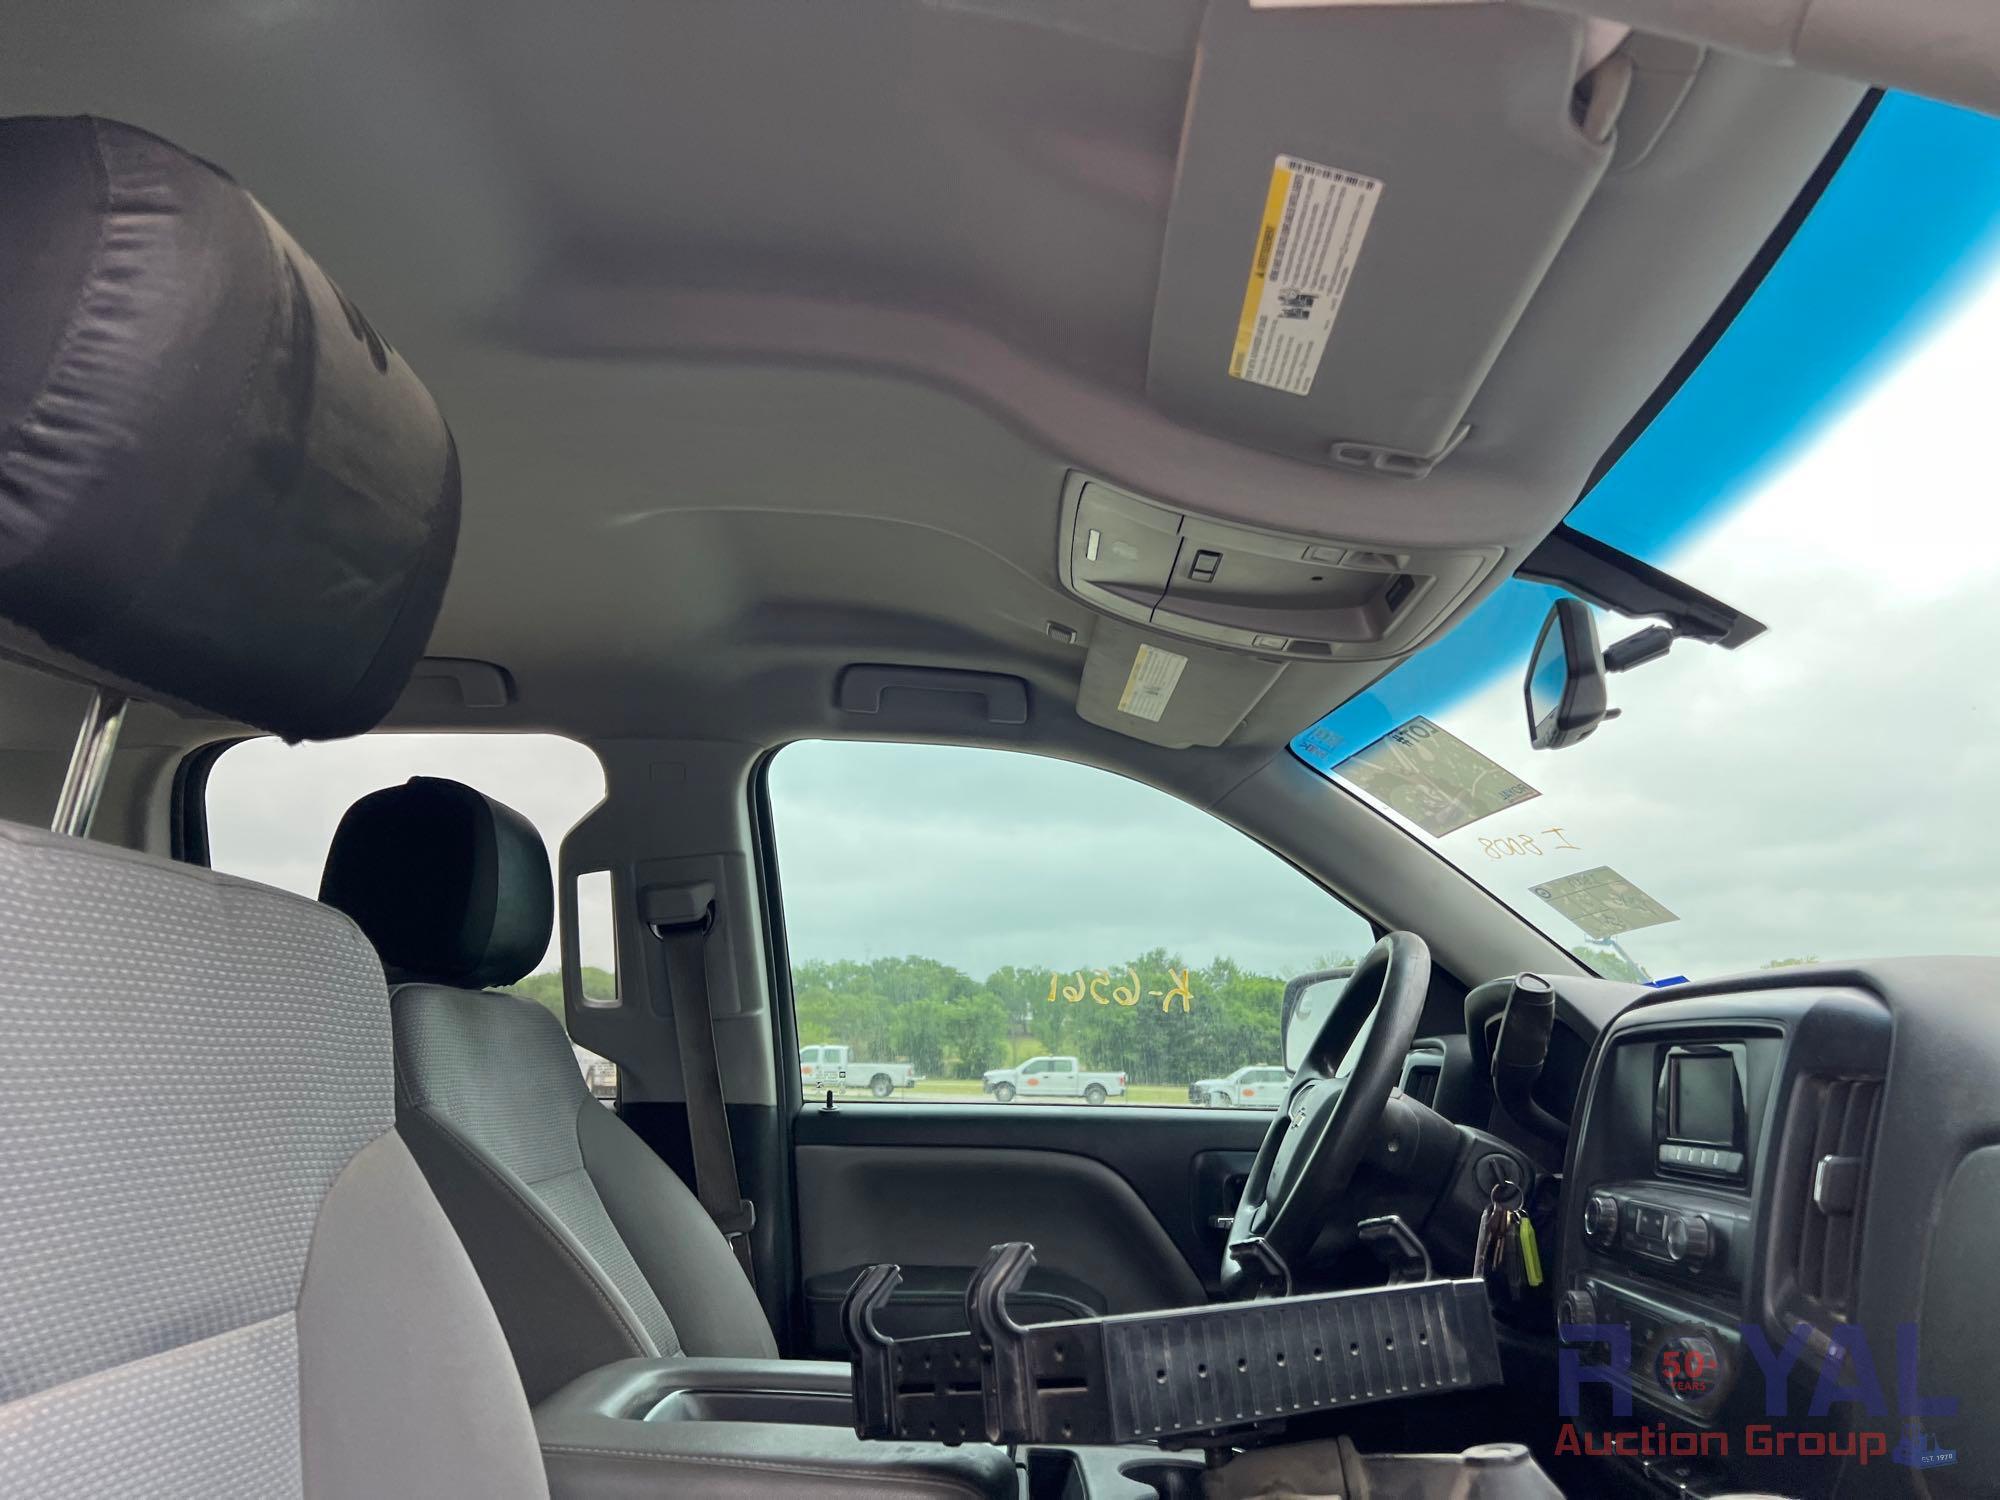 2014 Chevrolet Silverado 1500 4x4 Double Cab Pickup Truck